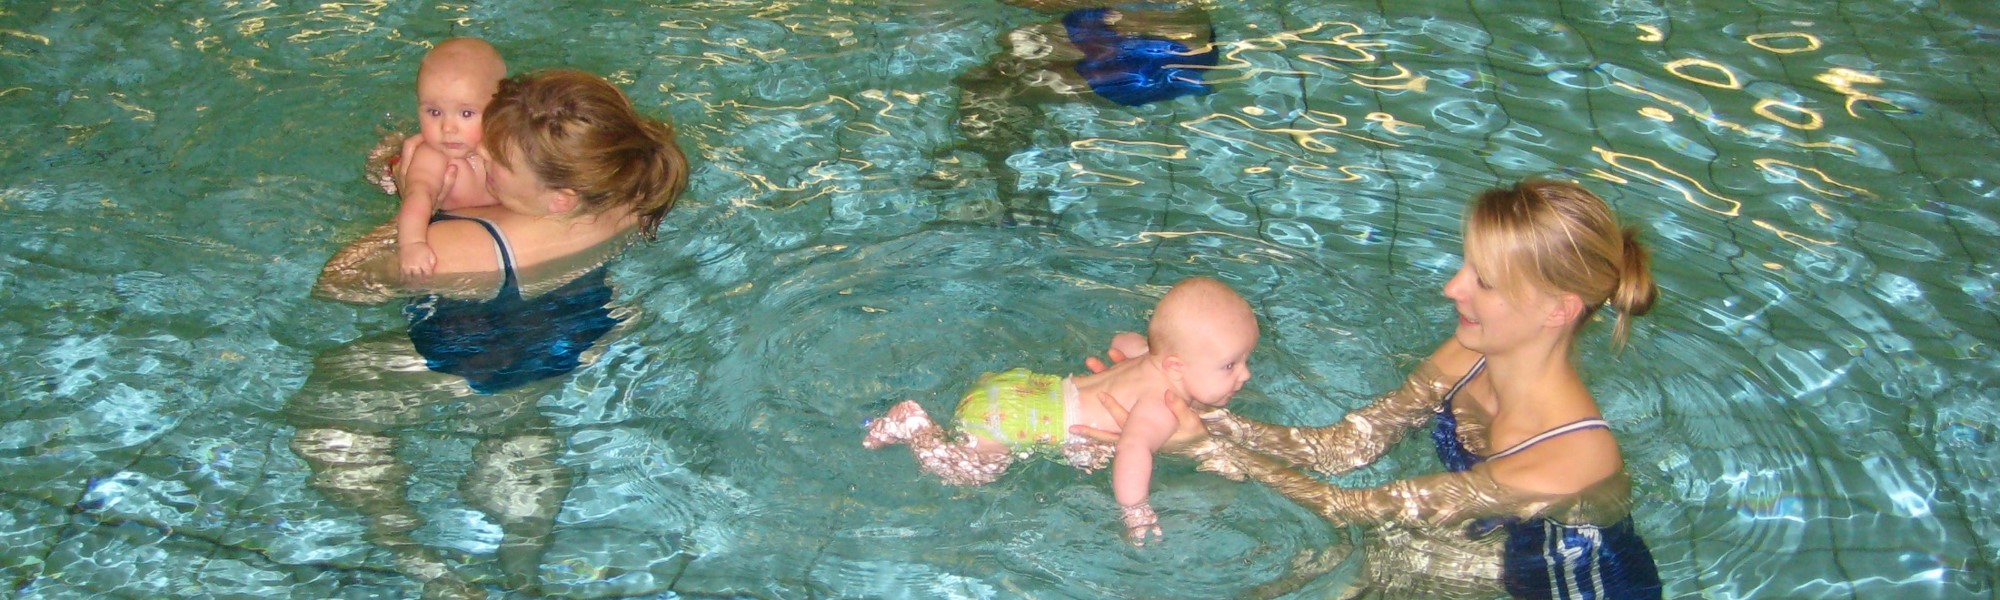 Kursteilnehmerinnen im Wasser, die ein Baby im Arm halten